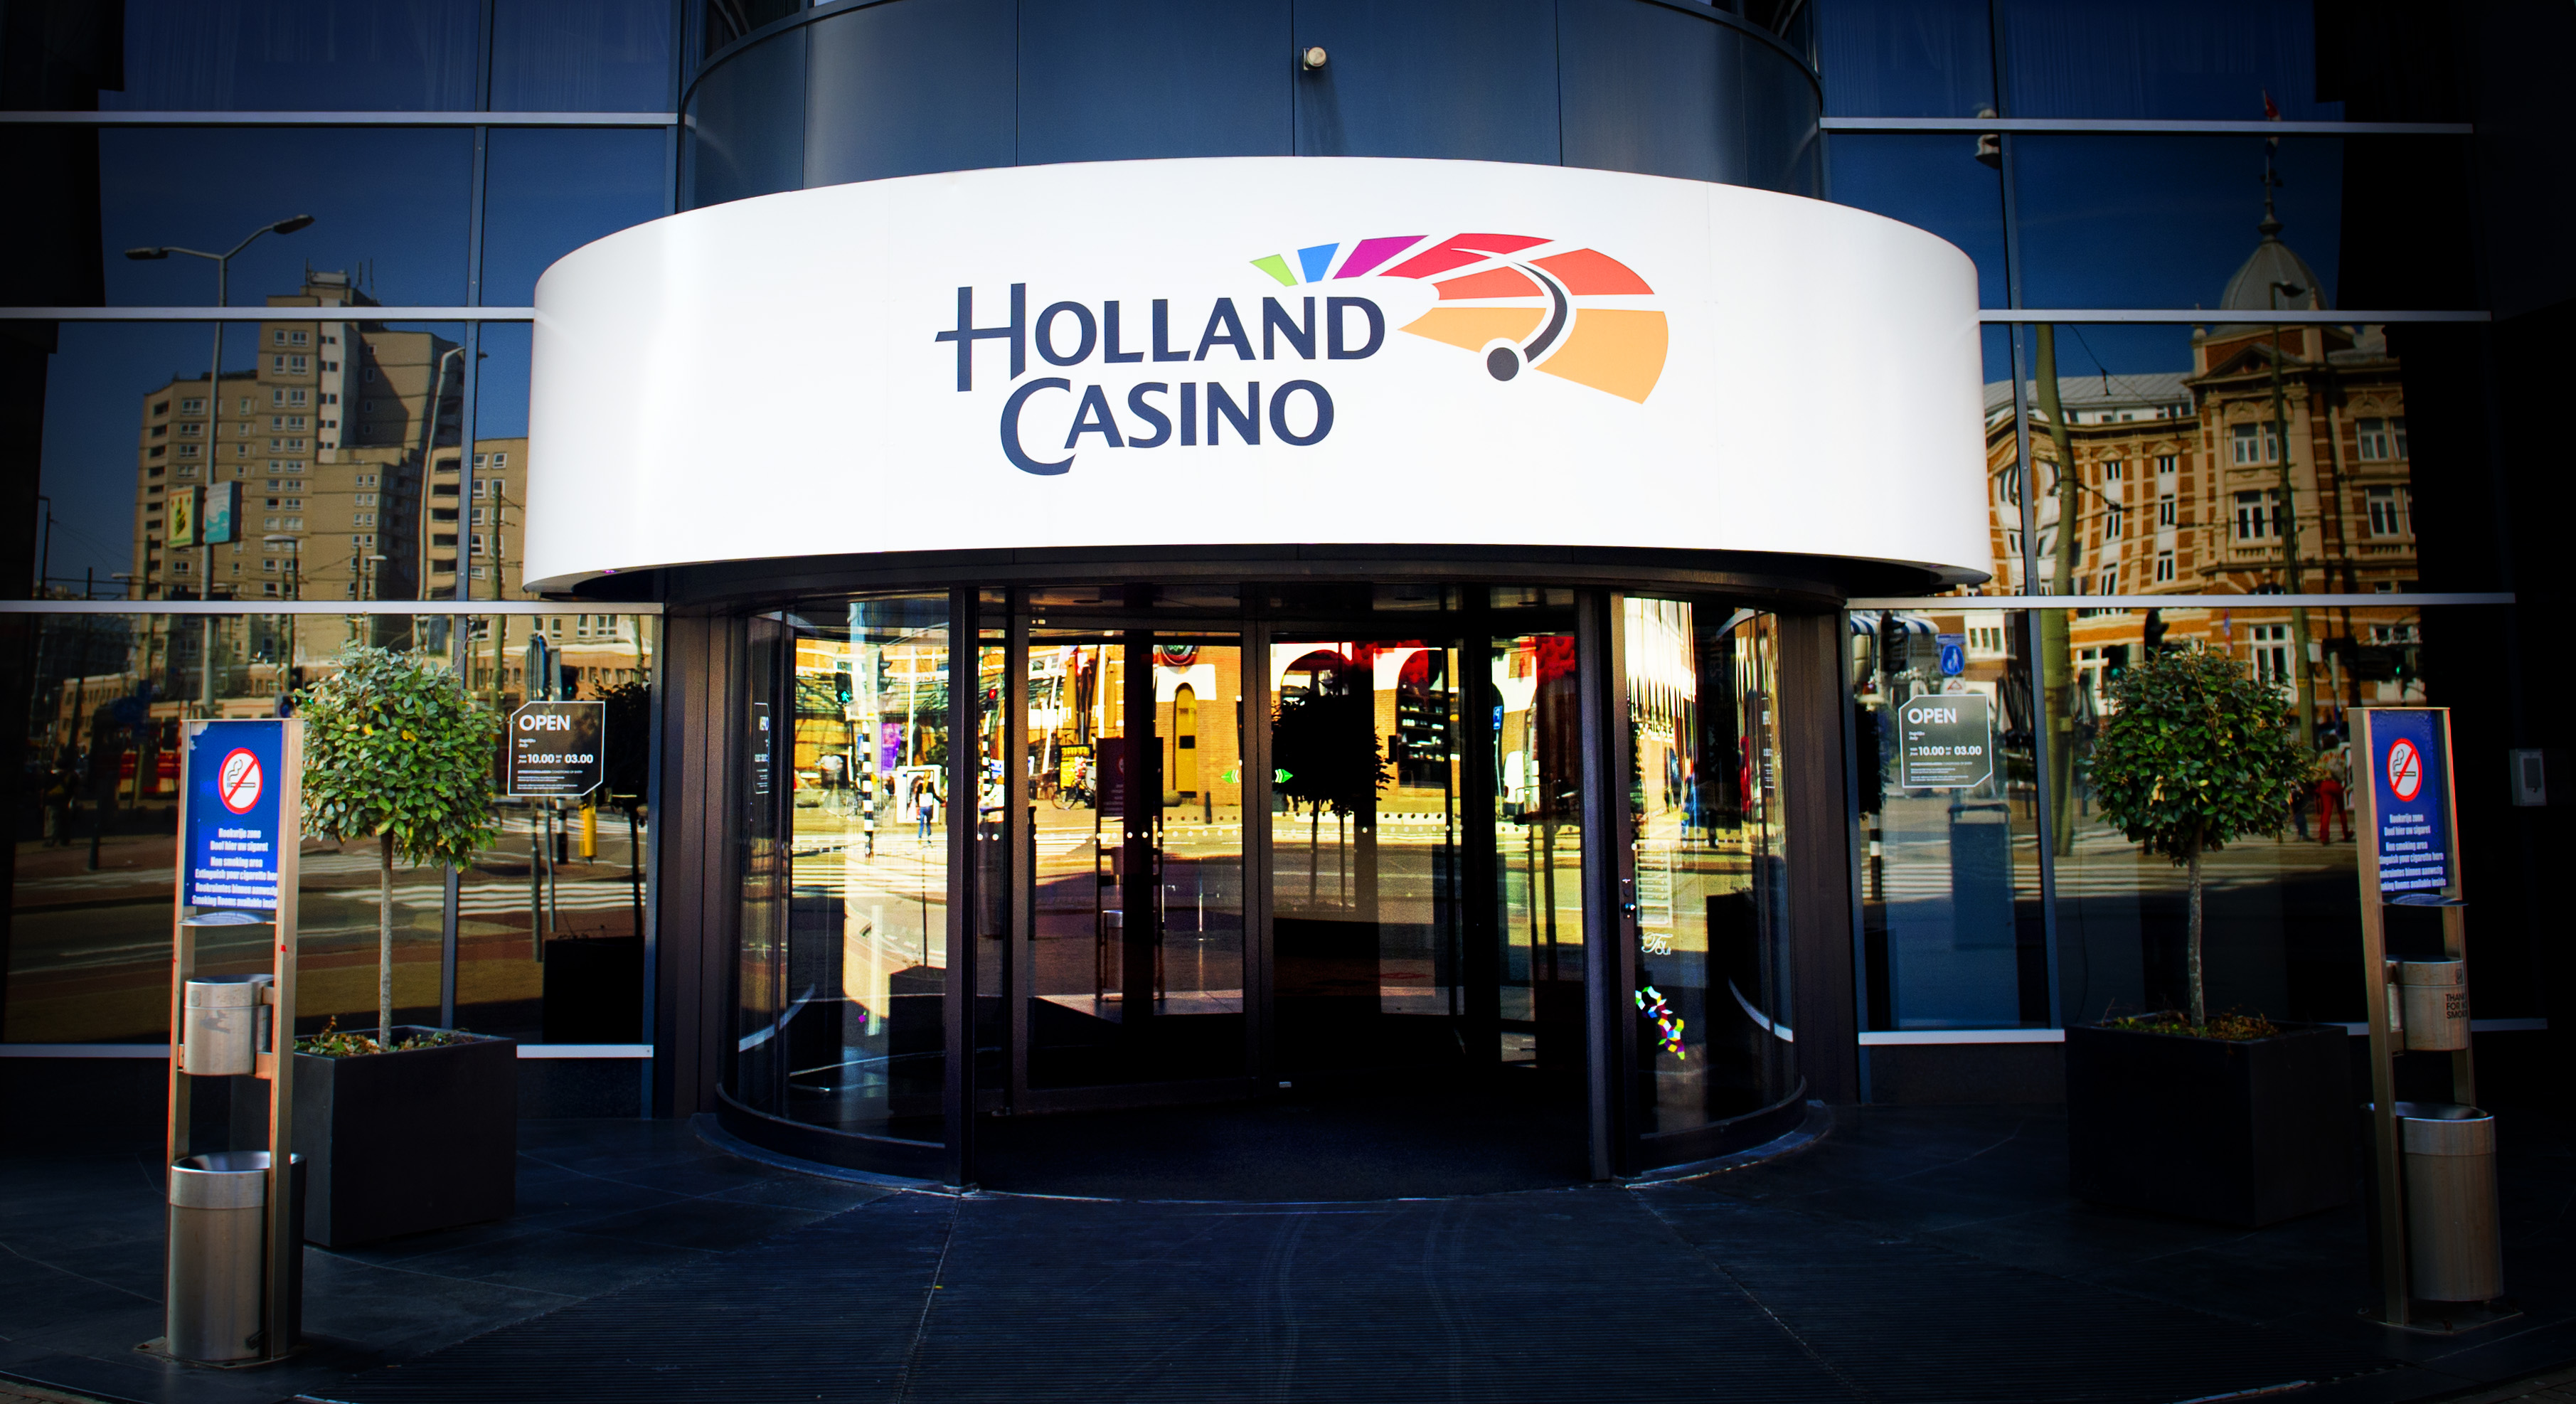 Holland Casino gaat op het hoofdkantoor in Hoofddorp ruim 100 van de 300 banen schrappen. Dat heeft het staatsgokbedrijf maandag bekendgemaakt. ,,Holland Casino voert een nieuwe strategie in, waarbij de 14 casino's meer ondernemingsvrijheid en ruimere verantwoordelijkheden krijgen. Als gevolg daarvan wordt de overhead teruggebracht. Met deze nieuwe strategie legt Holland Casino de basis voor een structureel gezond bedrijf en bereidt het bedrijf zich voor op de concurrentiestrijd in een open casinomarkt'', aldus het bedrijf. Holland Casino stevent dit jaar af op een verlies van ruim 30 miljoen euro. ,,Zonder extra maatregelen is ook komend jaar verlieslijdend'', aldus het casino. Eerder dit jaar leidde een reorganisatie al tot een verlies van 350 banen.